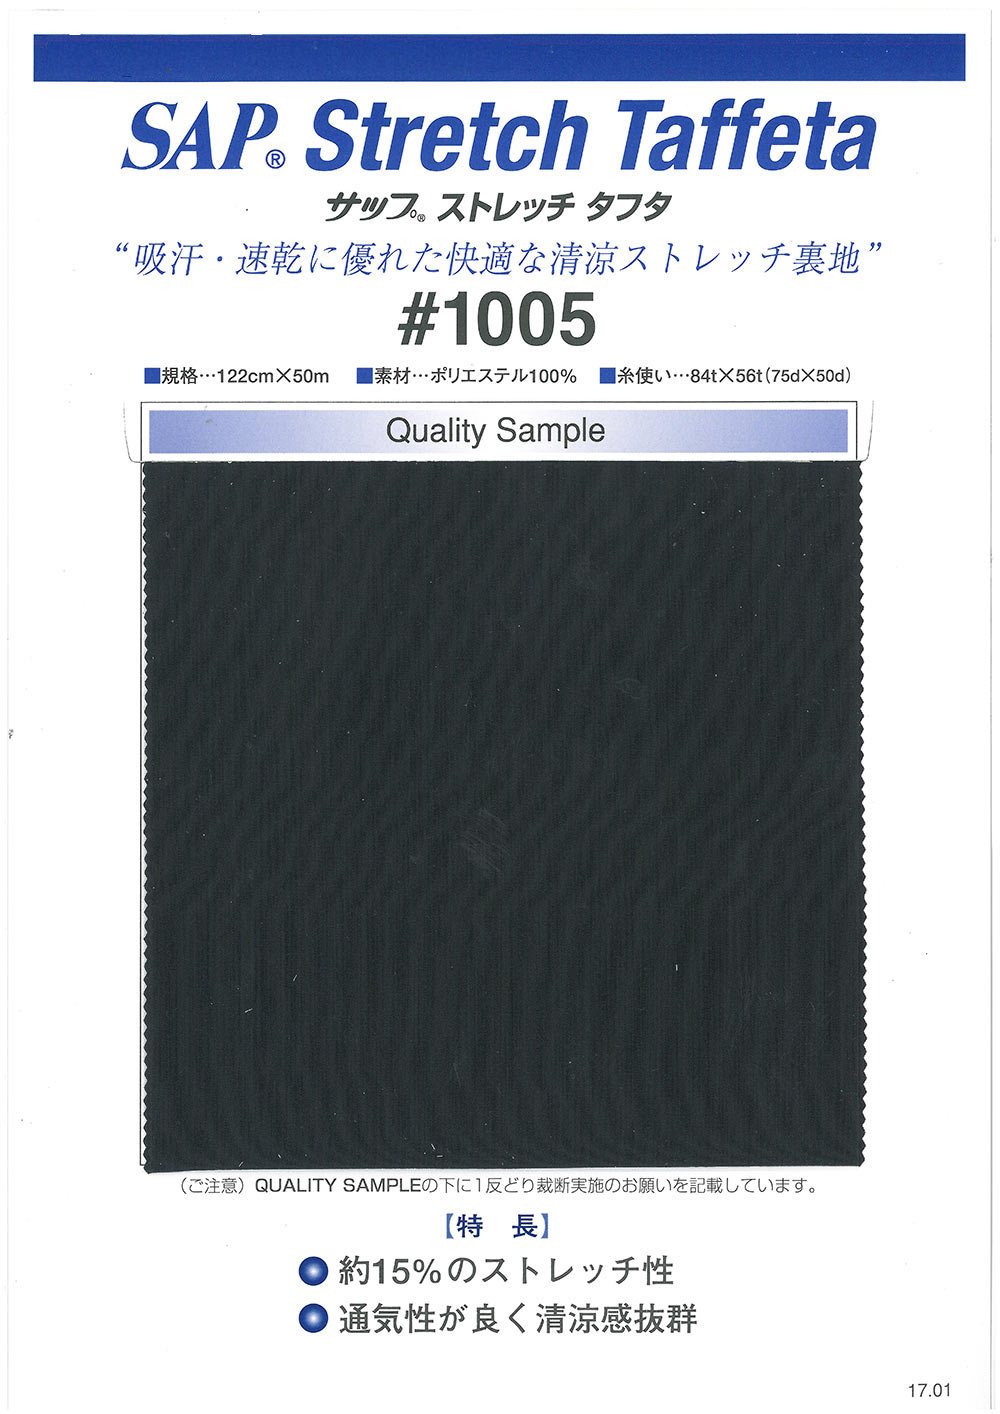 1005 Forro SAP Cool Stretch (Absorción Del Sudor, Secado Rápido)[Recubrimiento] TORAY